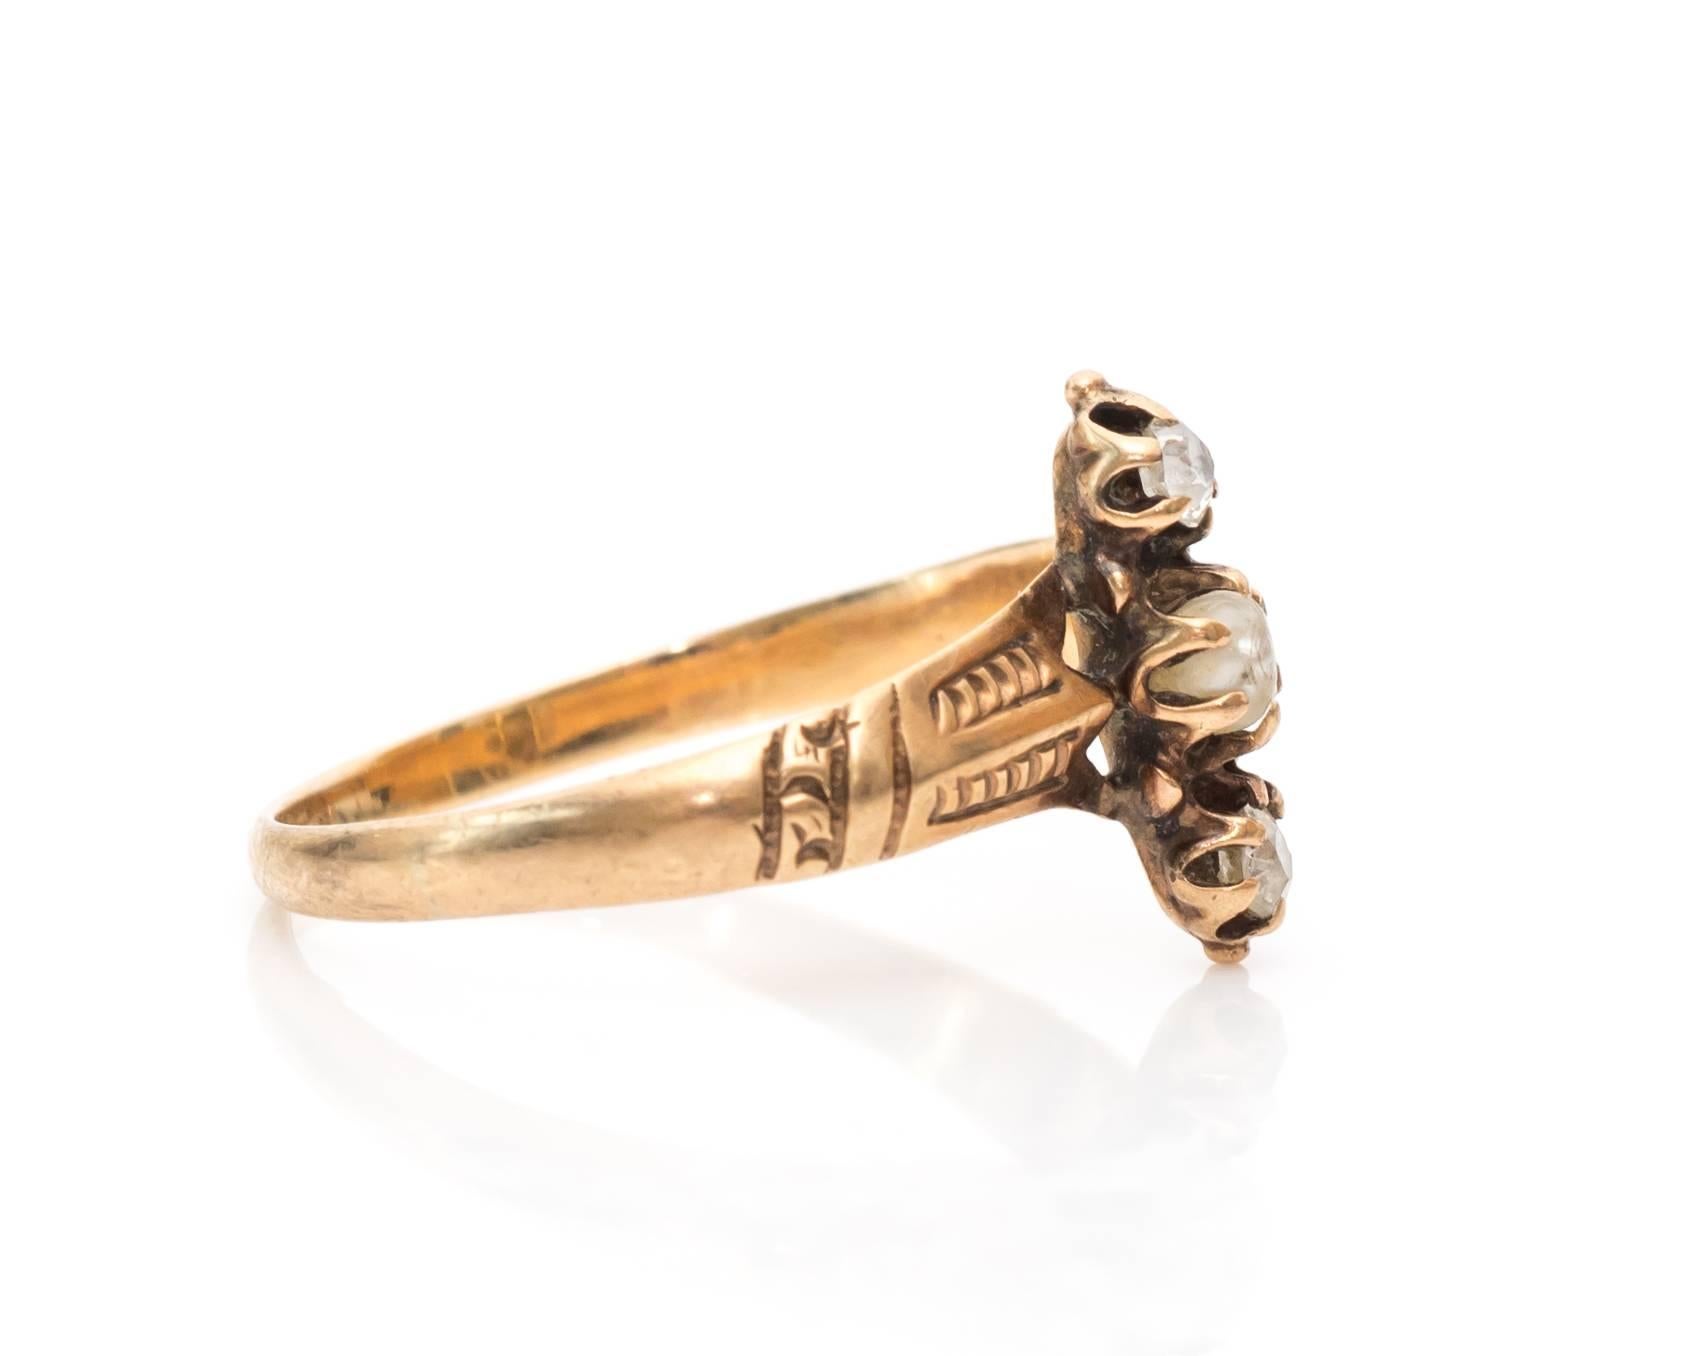 Das perfekte Akzentstück voller Glanz und Gloria. Dieser Ring aus den 1890er Jahren ist süß und raffiniert mit einer zentralen Saatperle und zwei einzeln geschliffenen Diamanten als Akzent. Jeder Stein ist in einer Sechs-Zacken-Fassung gefasst. Die